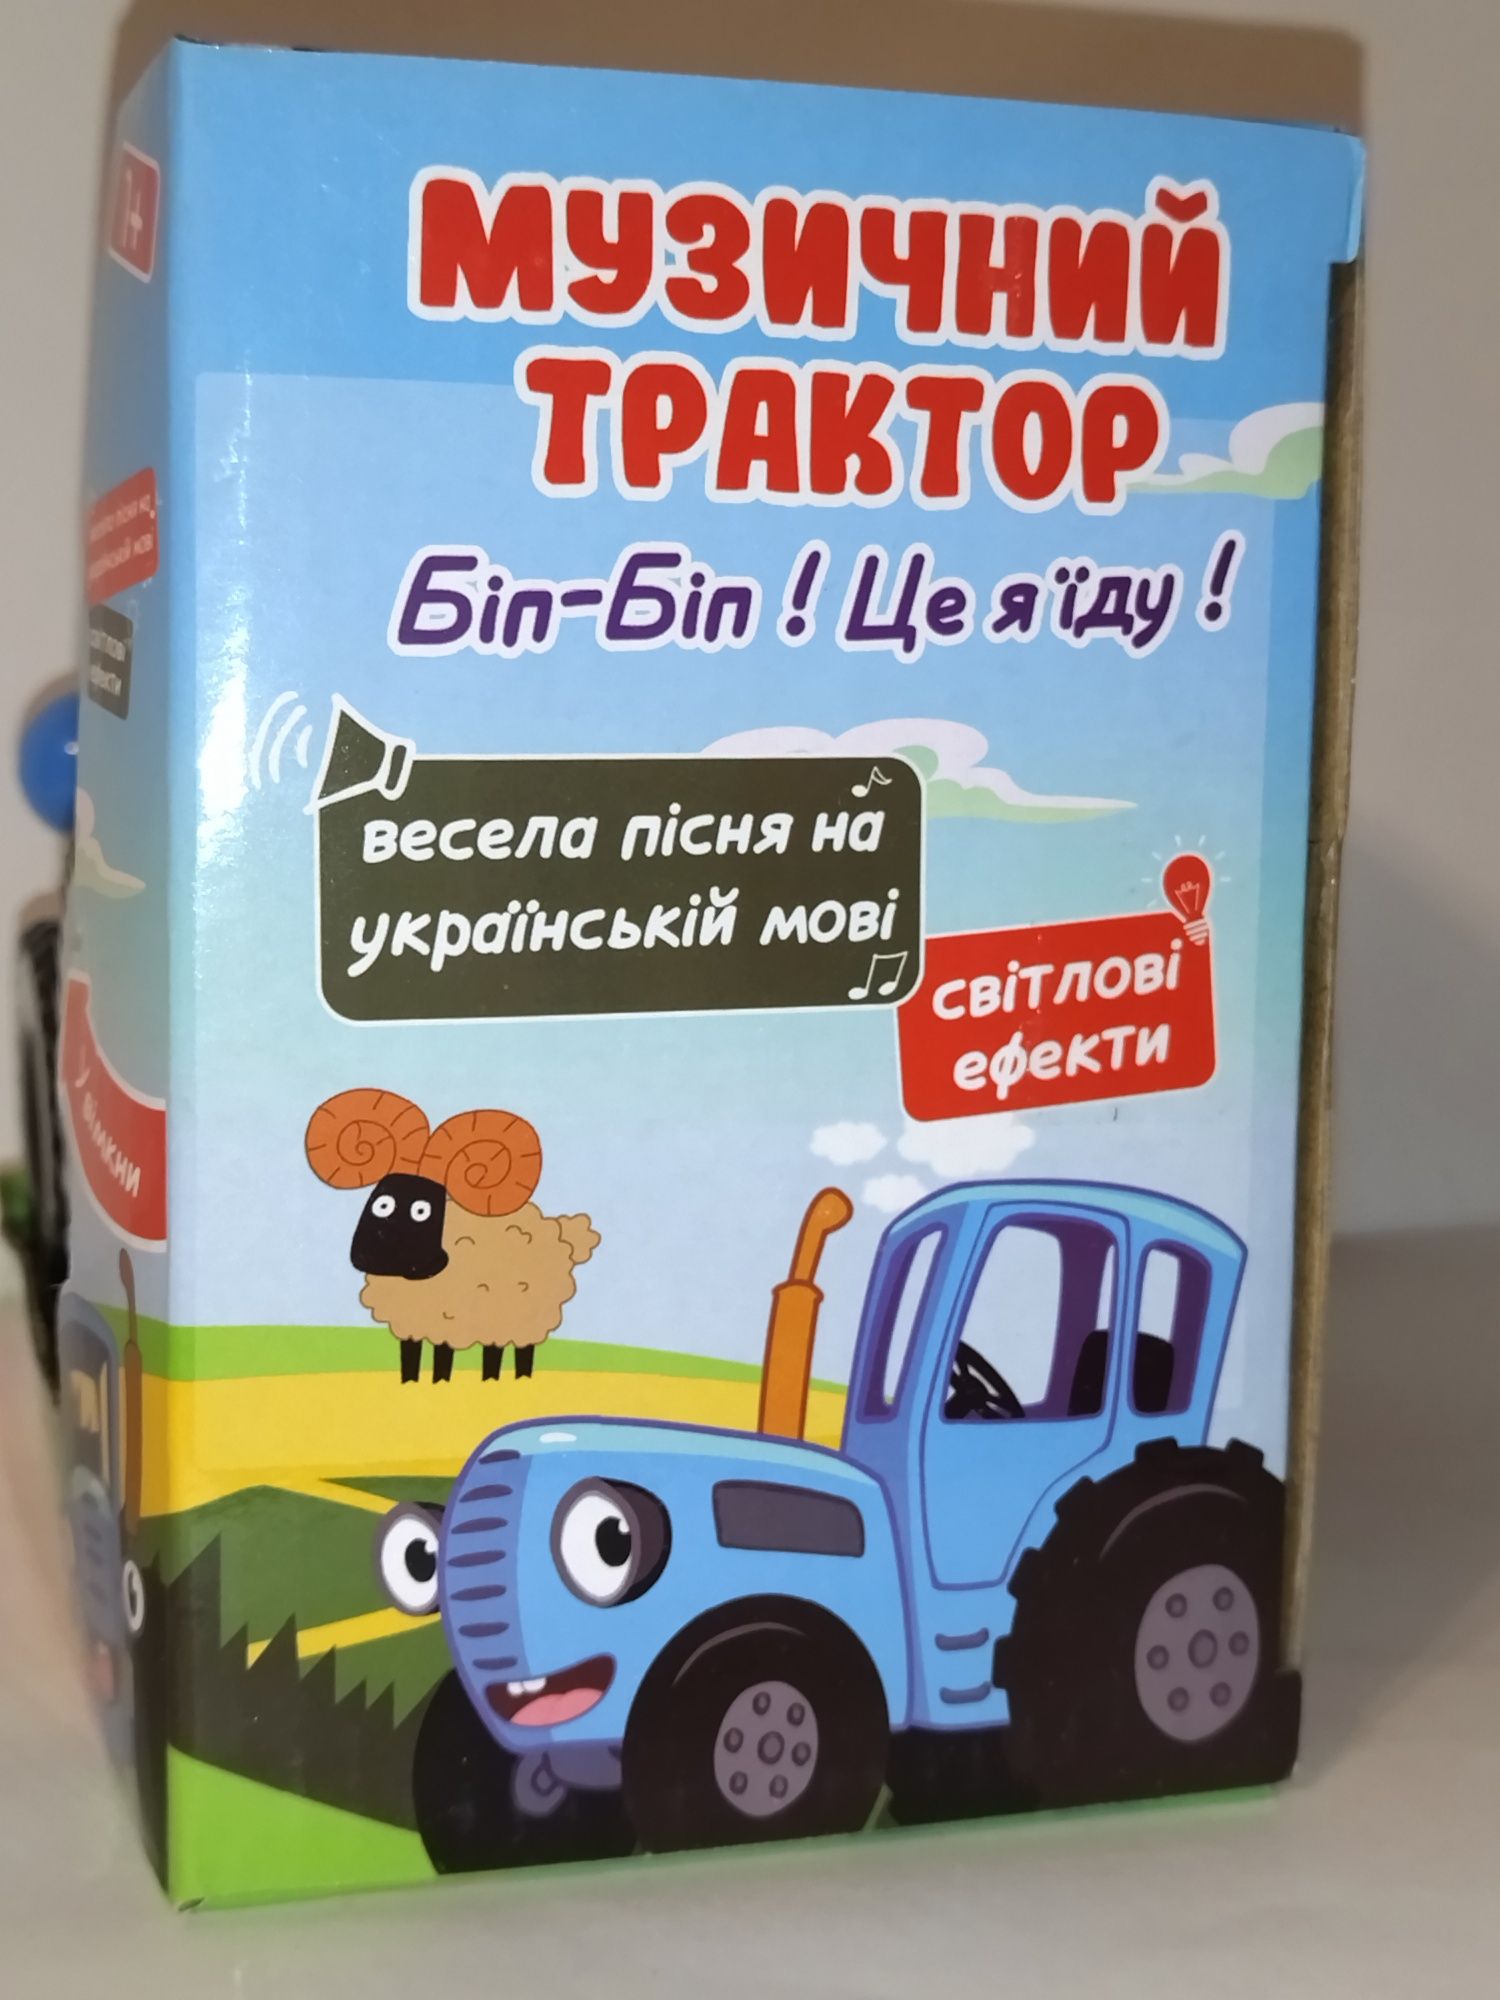 УЦЕНКА!!! Музыкальный Синий трактор/песенка на Украинском языке.